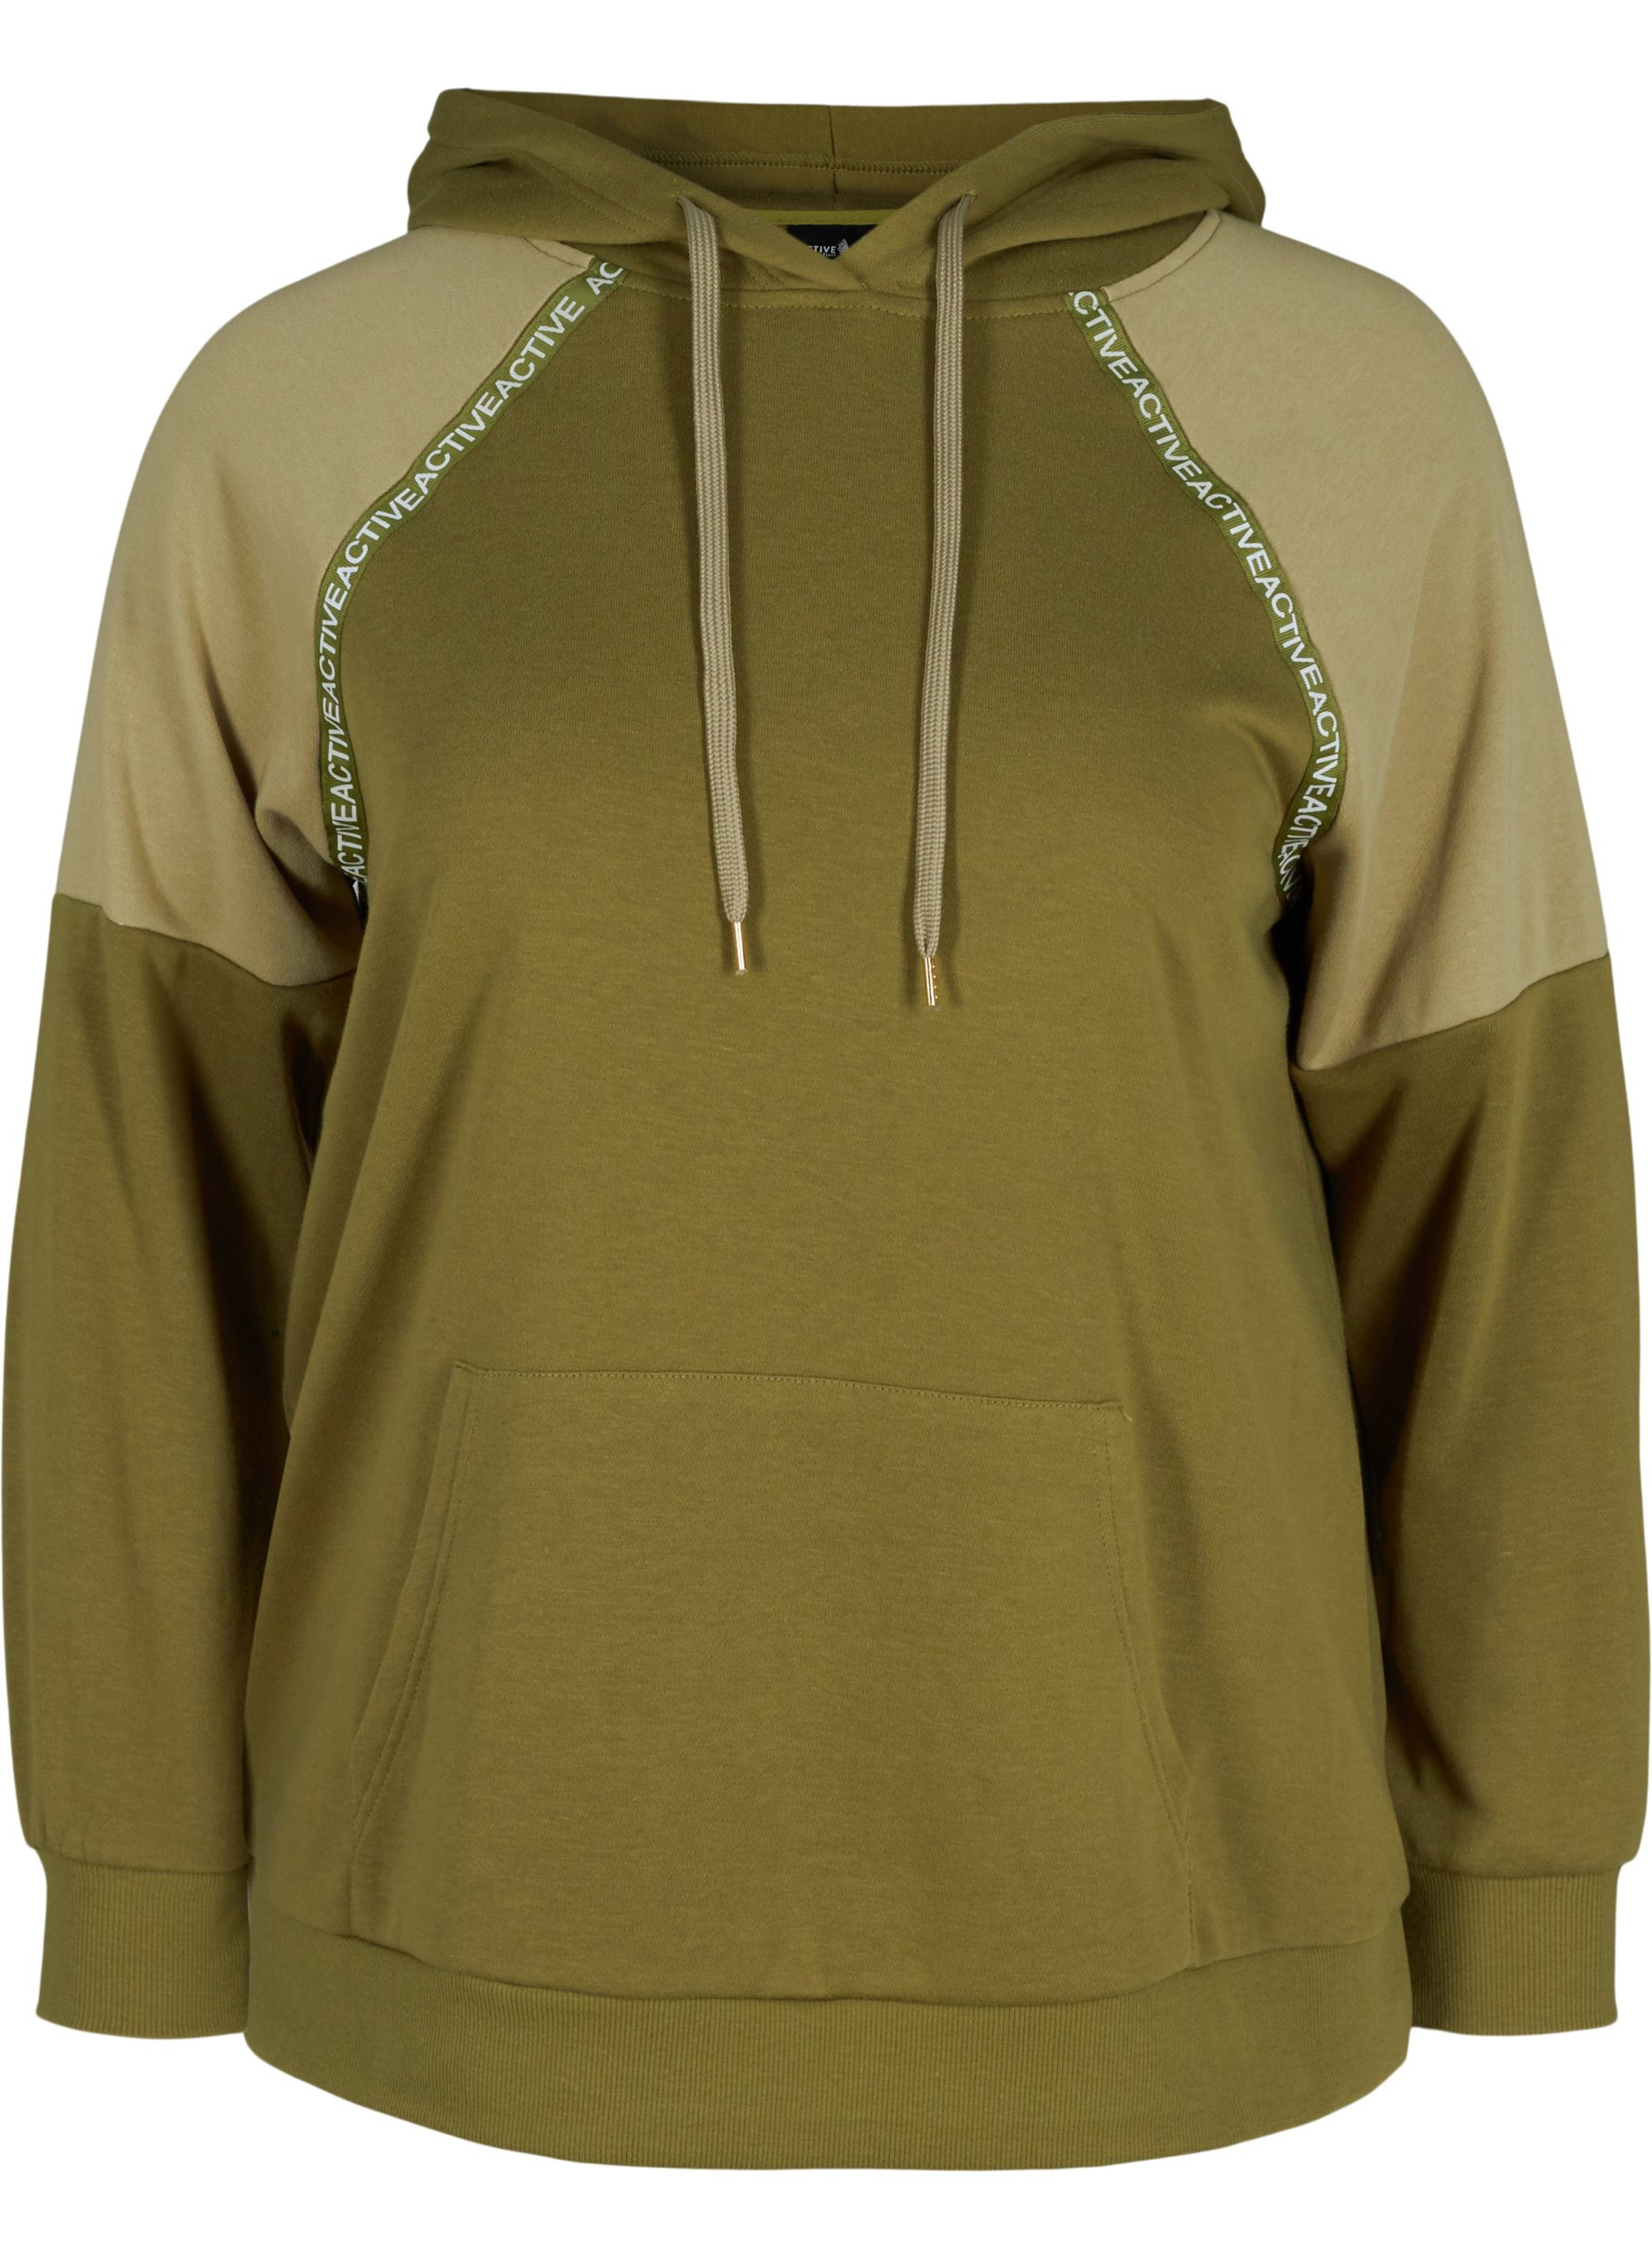 Sweatshirt mit Kapuze und Tasche, Olive Drab